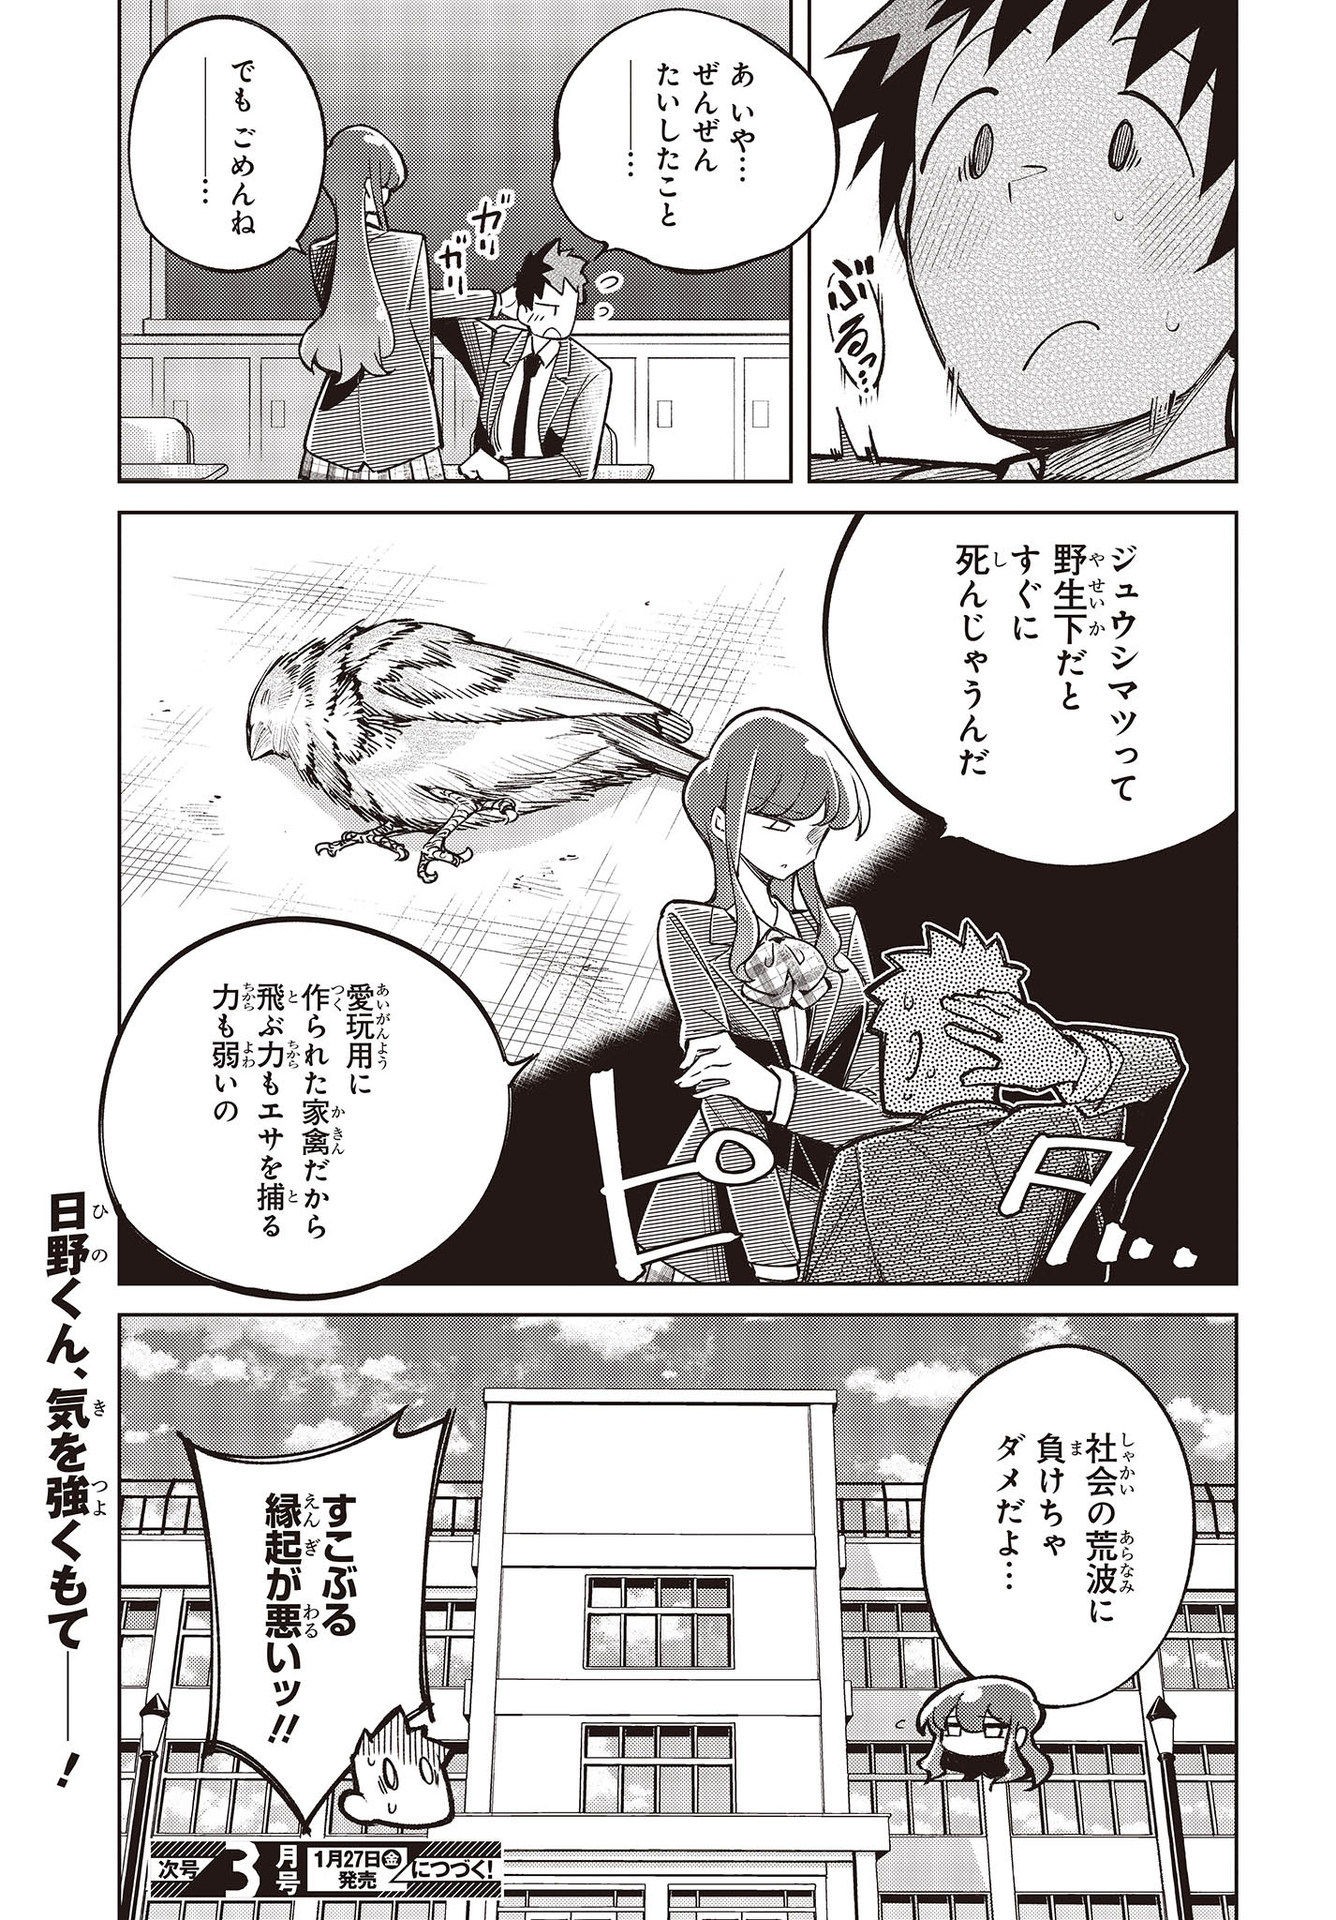 Ikimono-suki no Anima-san ni wa Honno Choppiri Doku ga aru - Chapter 3 - Page 27